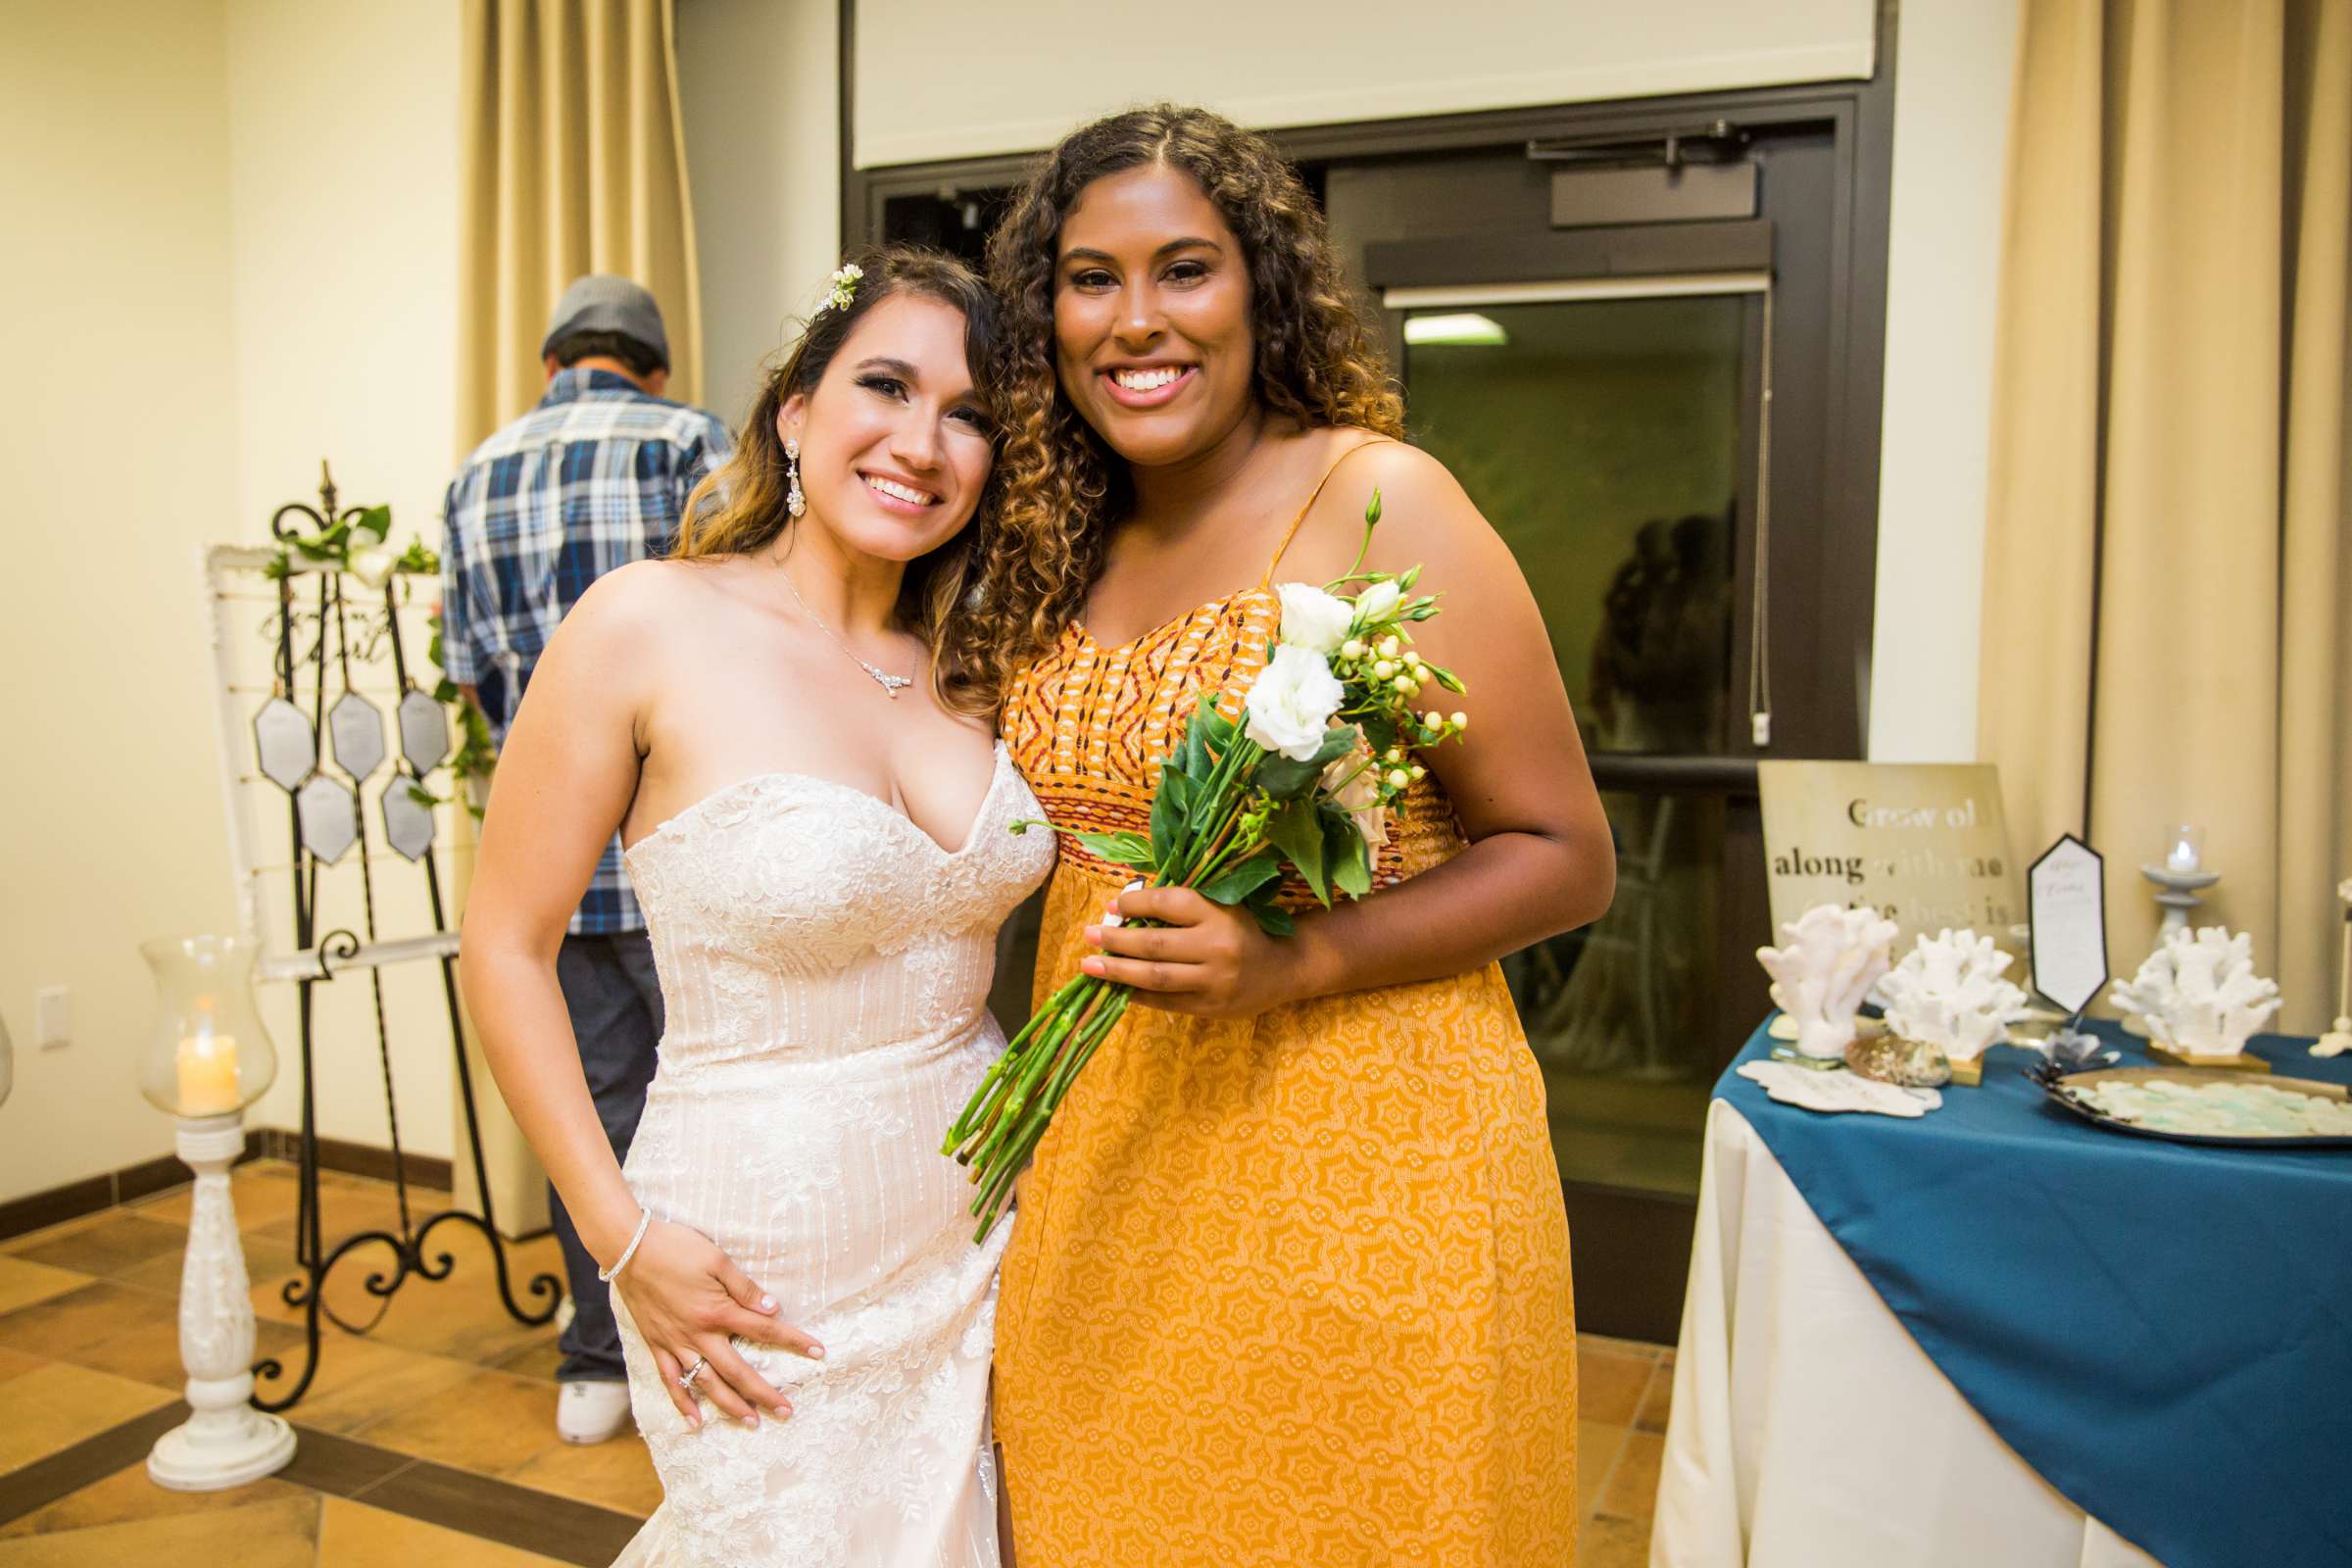 Del Mar Beach Resort Wedding coordinated by La Casa Del Mar, Alisa and Carlos Wedding Photo #380931 by True Photography